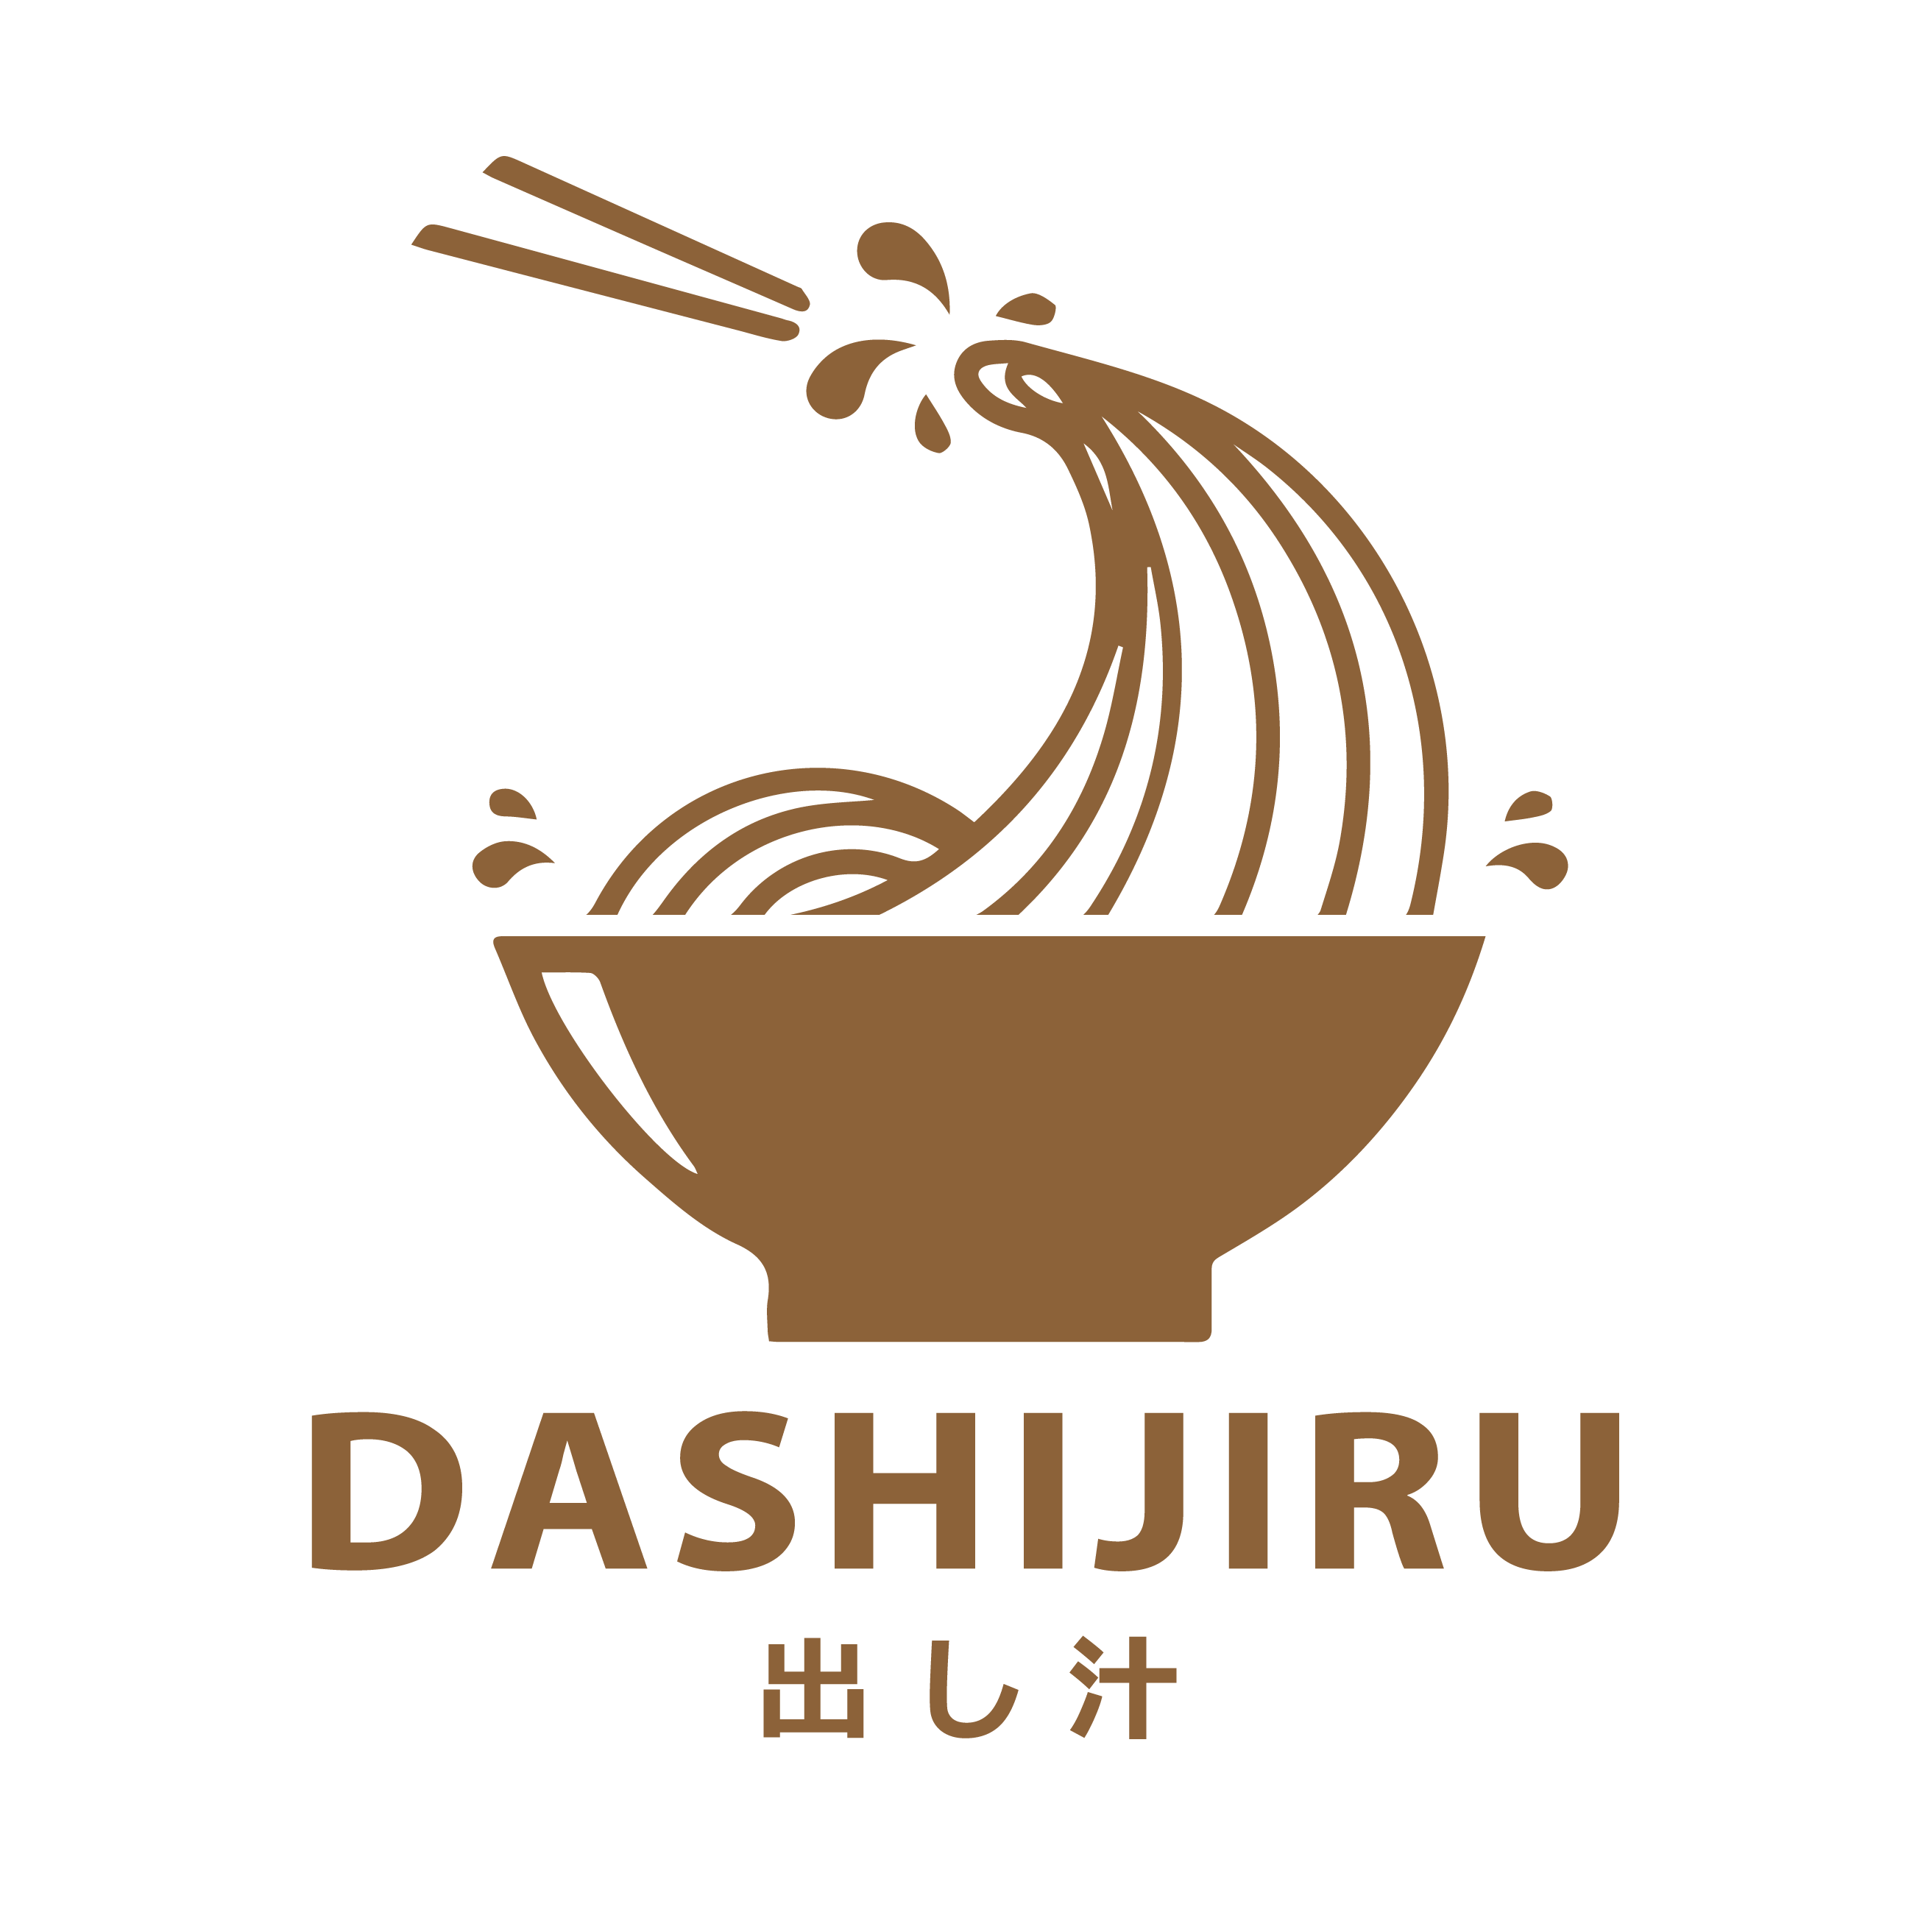 Dashijiru Logo